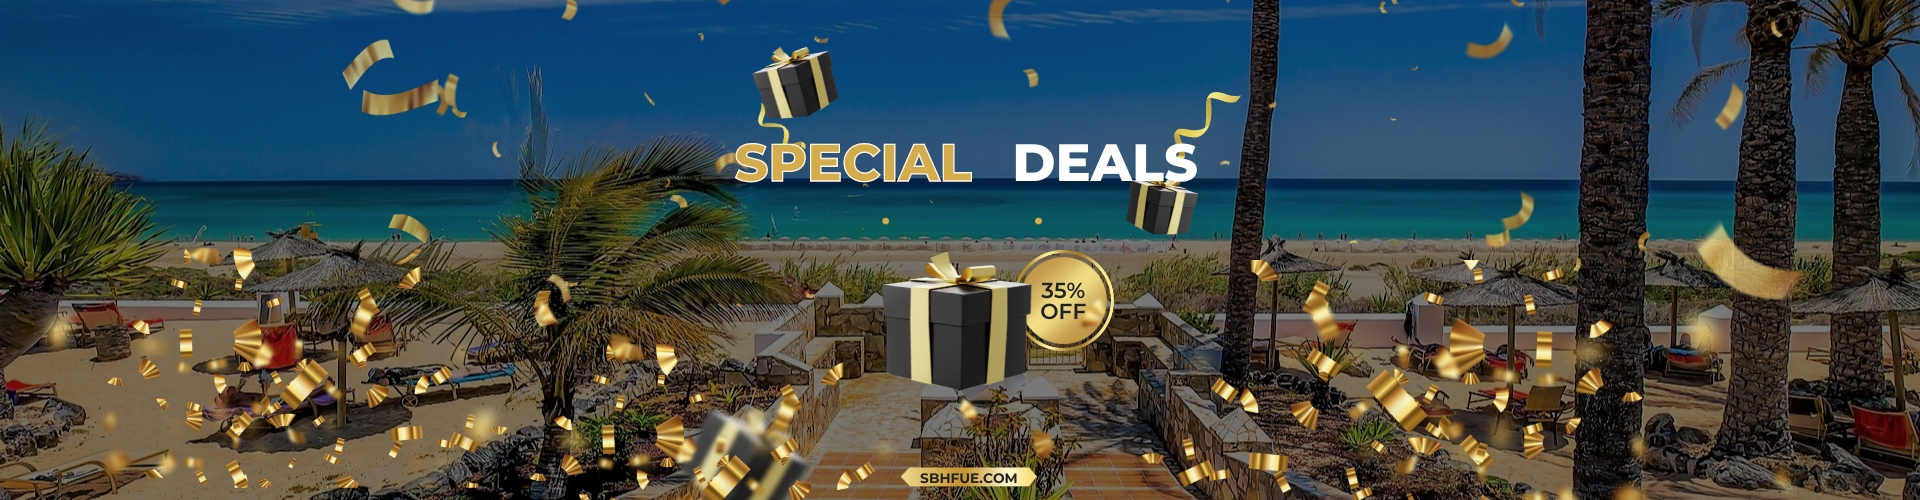 SBH Special Deals